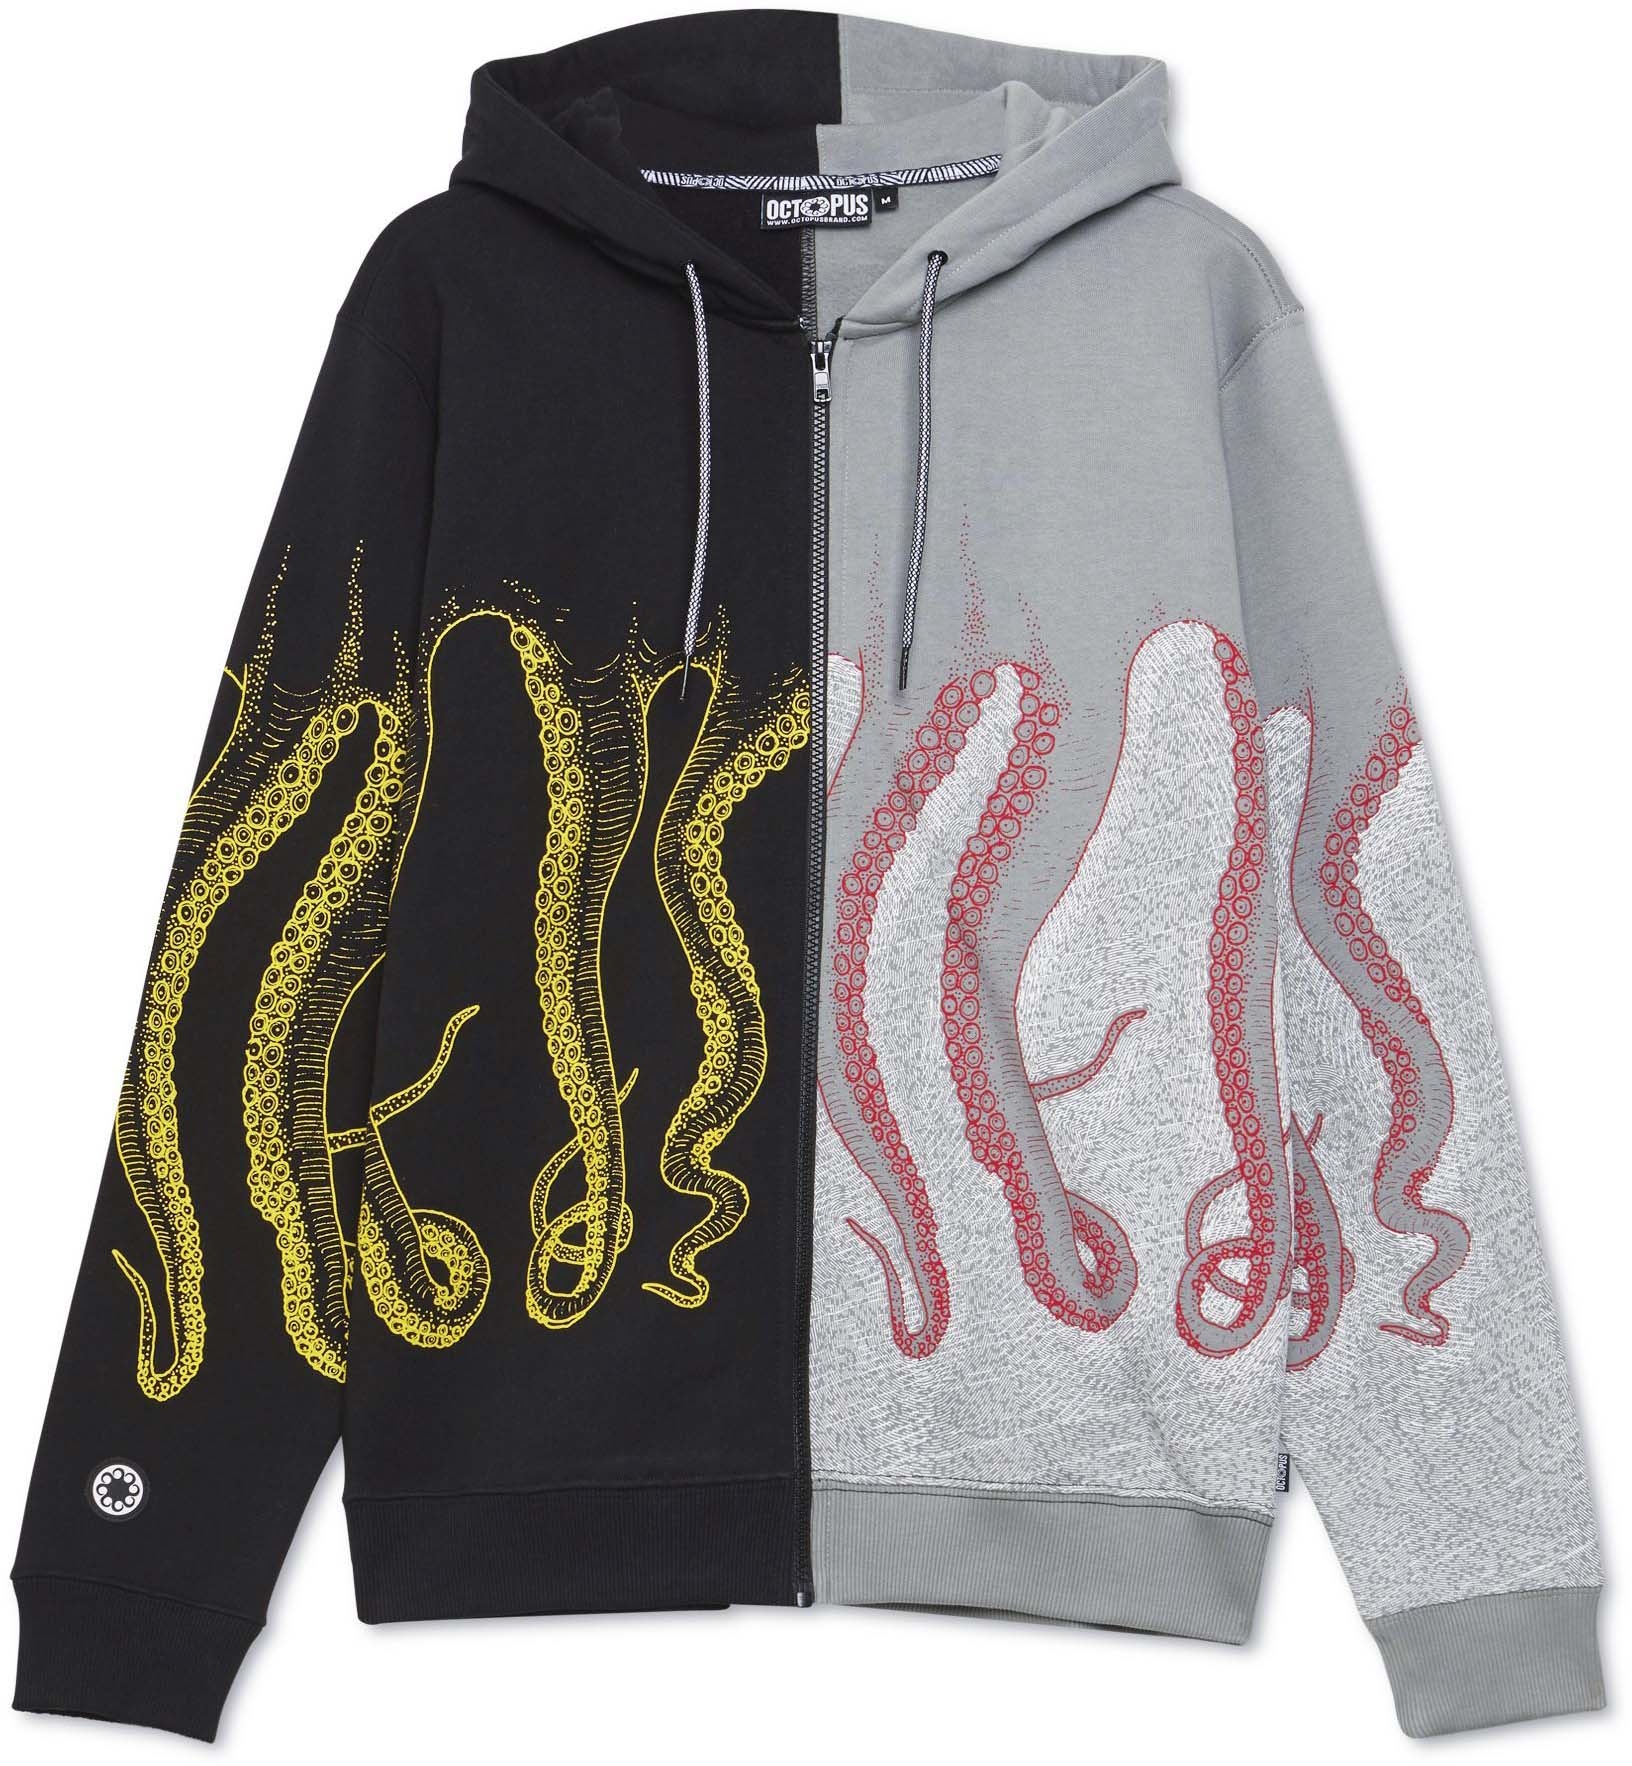 Octopus felpa Half Zip Hoodie black grey multicolor | eBay